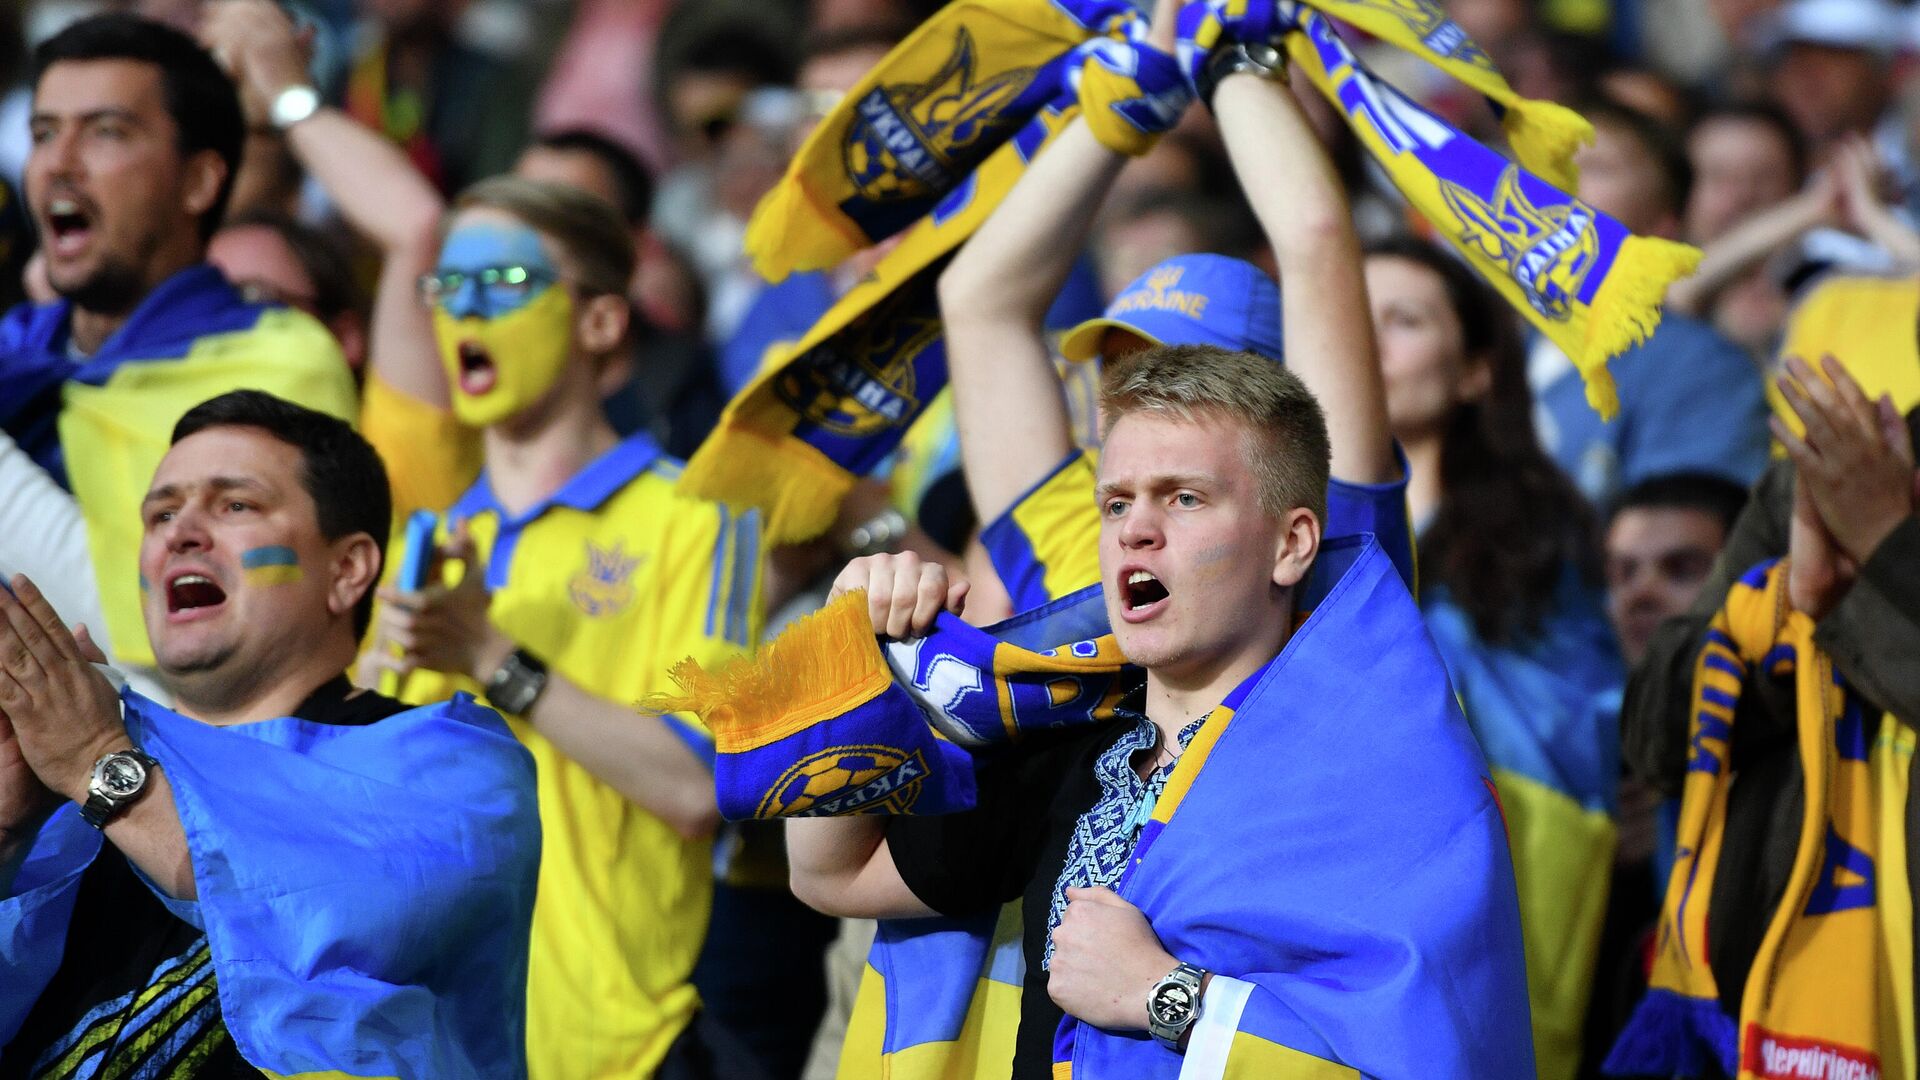 УЕФА закрыл домашние трибуны сборной Украины из-за расистского поведения фанатов